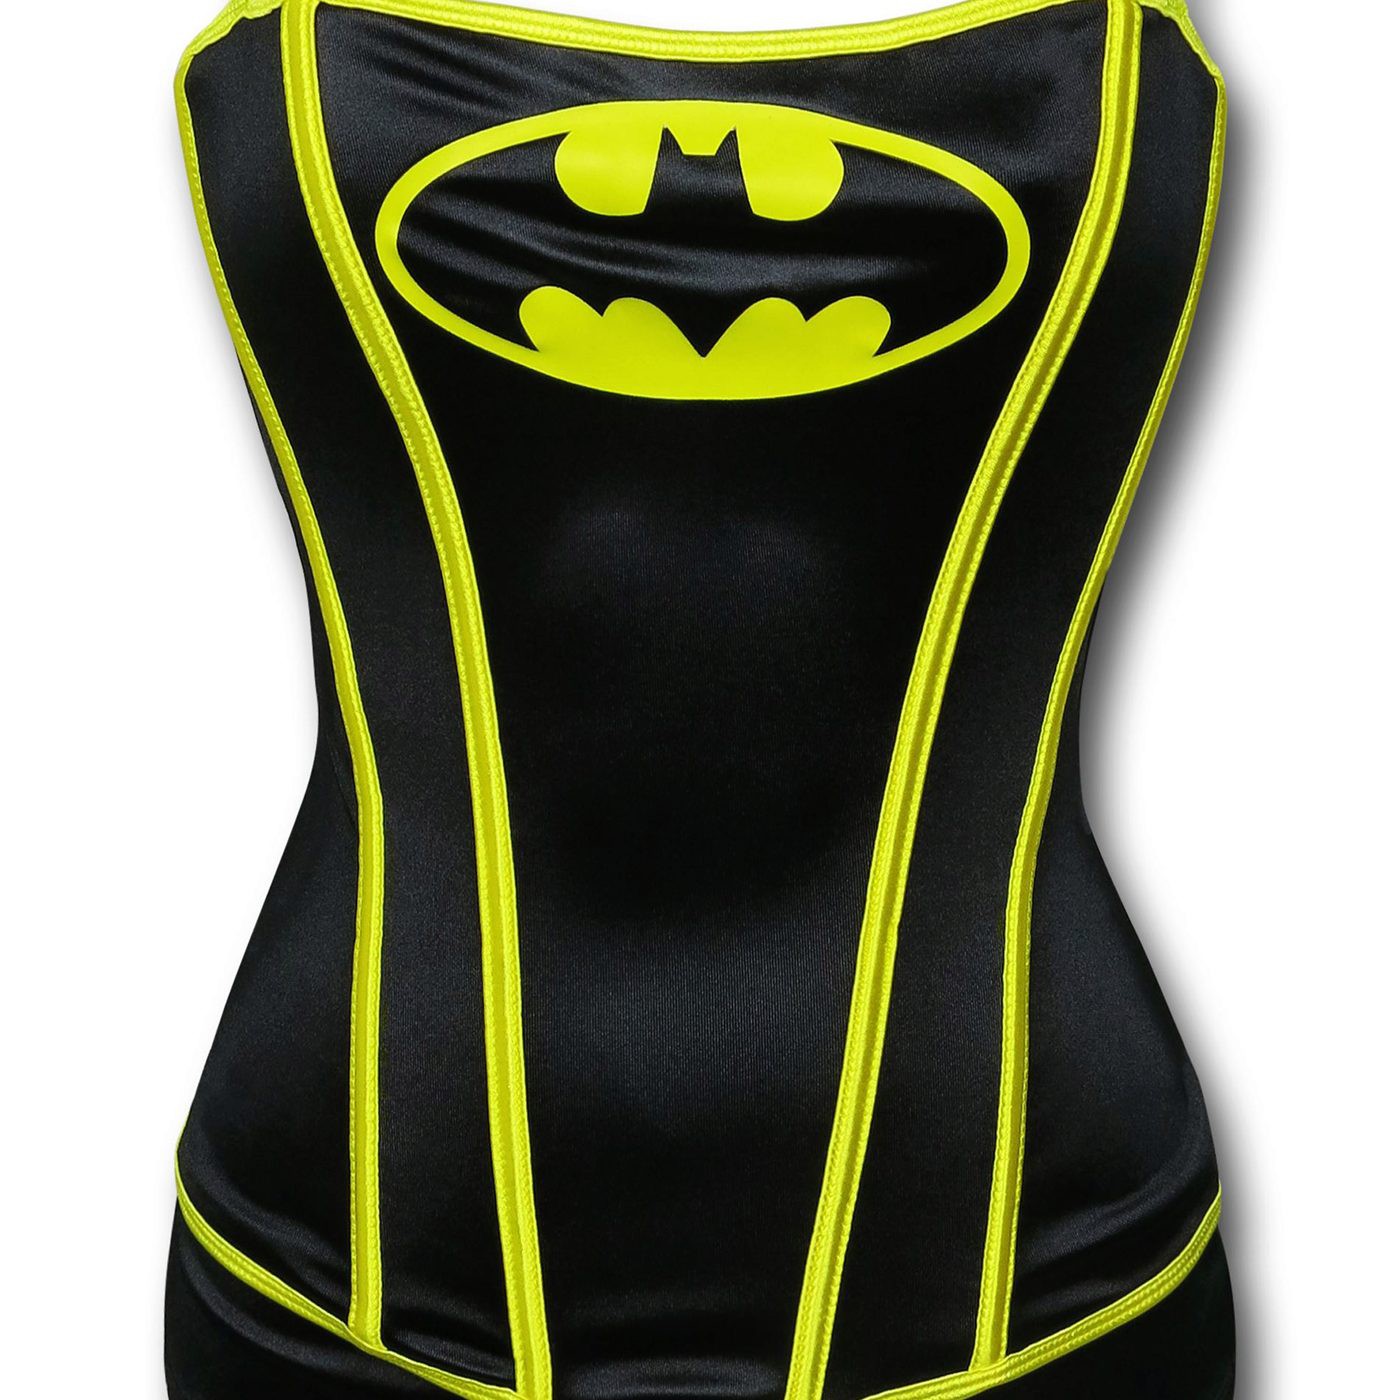 Batman Printed Corset & Panty Set